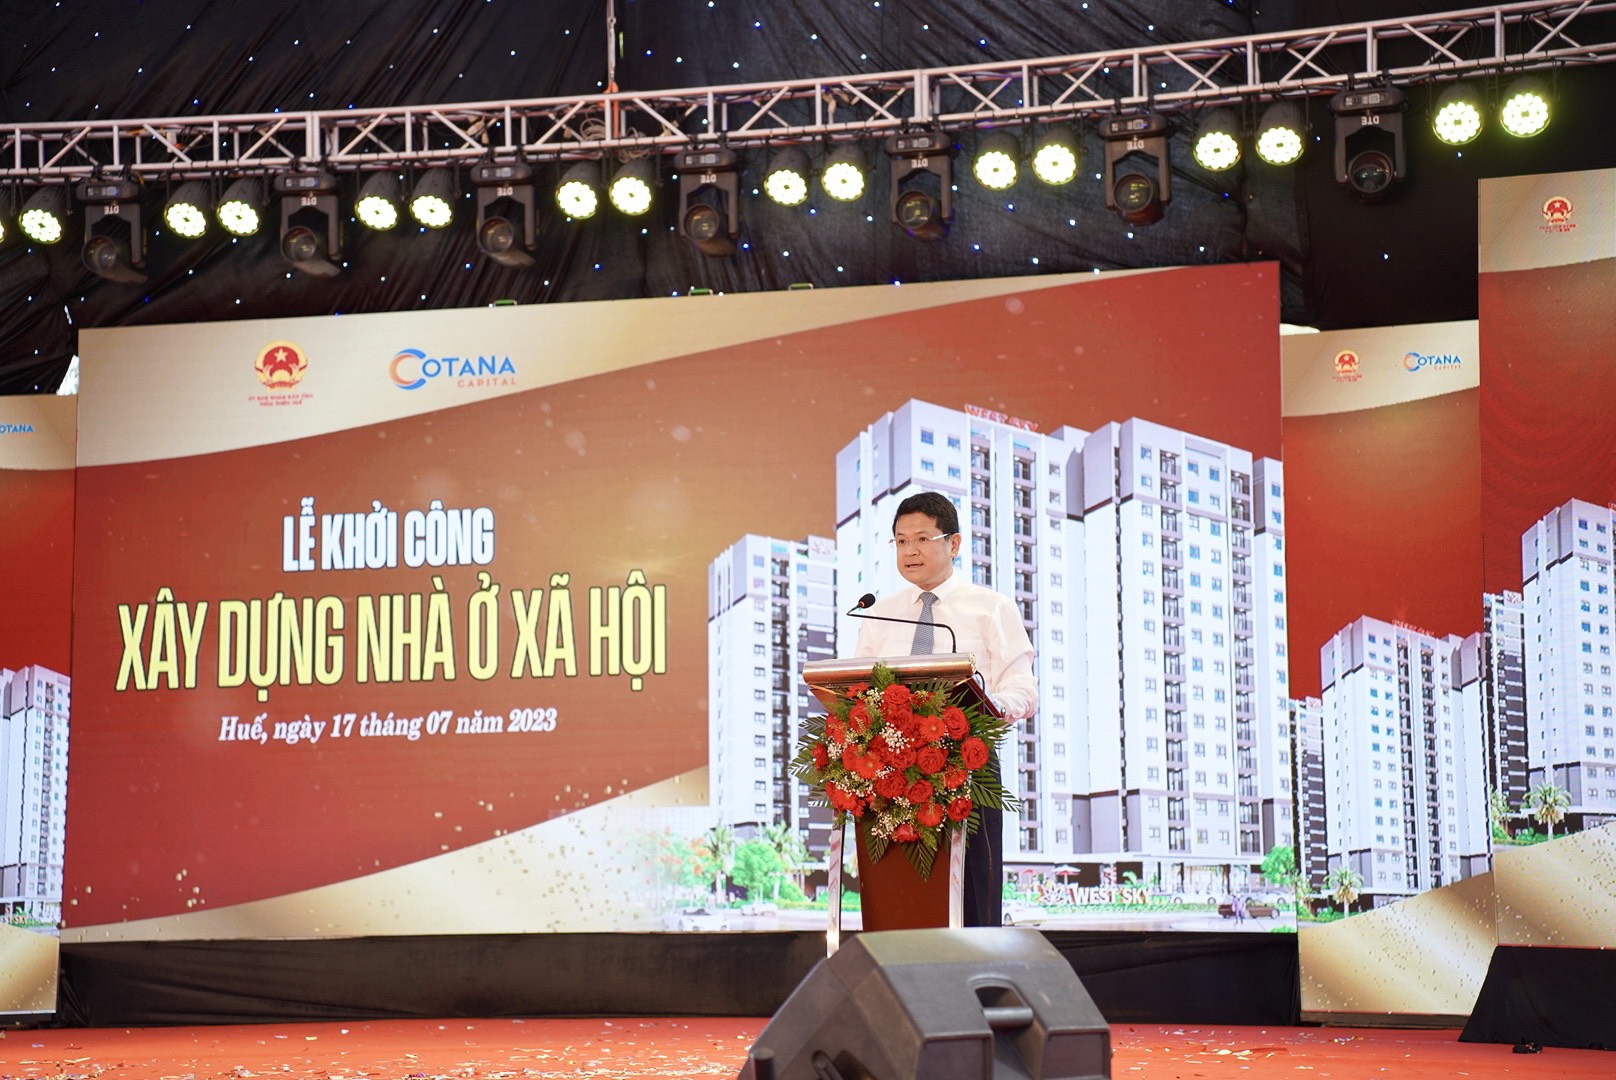 Ông Hoàng Hải Minh, Phó Chủ tịch UBND tỉnh Thừa Thiên - Huế đề nghị các cơ quan quản lý nhà nước về xây dựng tạo điều kiện thuận lợi cho nhà đầu tư trong quá trình triển khai xây dựng. Ảnh: CĐ.